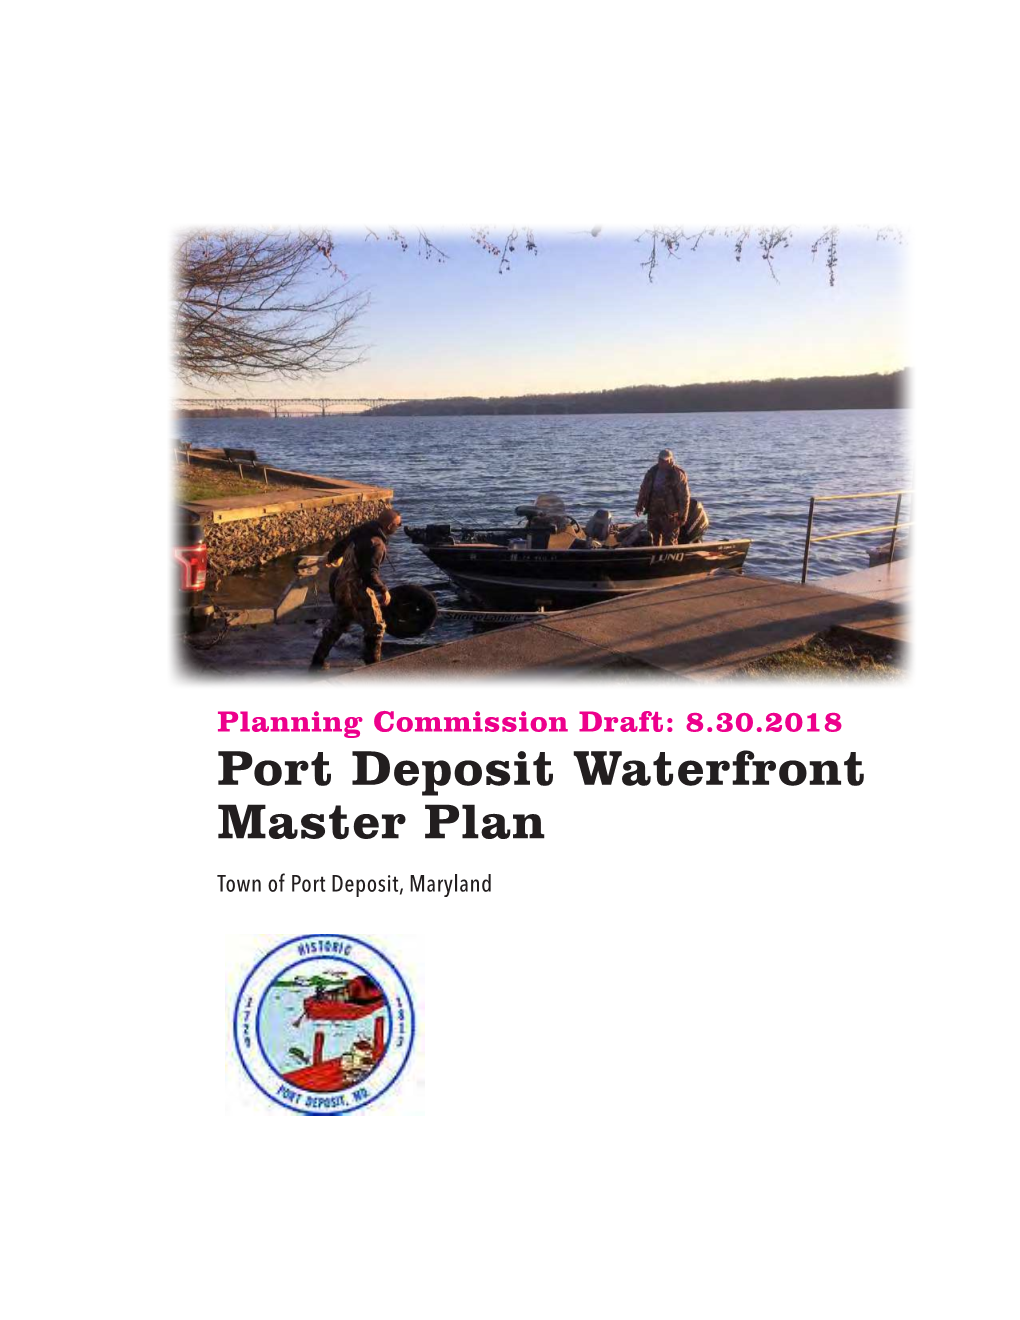 Port Deposit Waterfront Master Plan